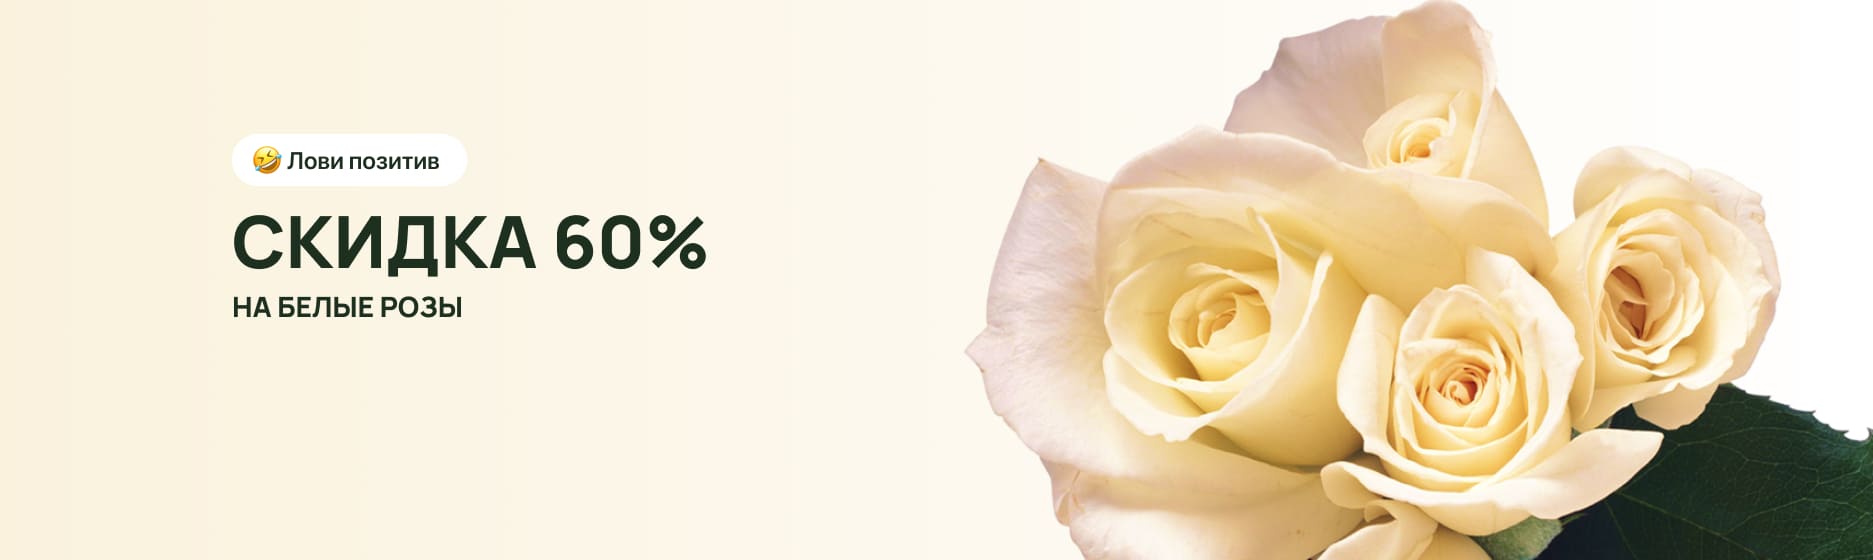 Белые розы со скидкой 60%